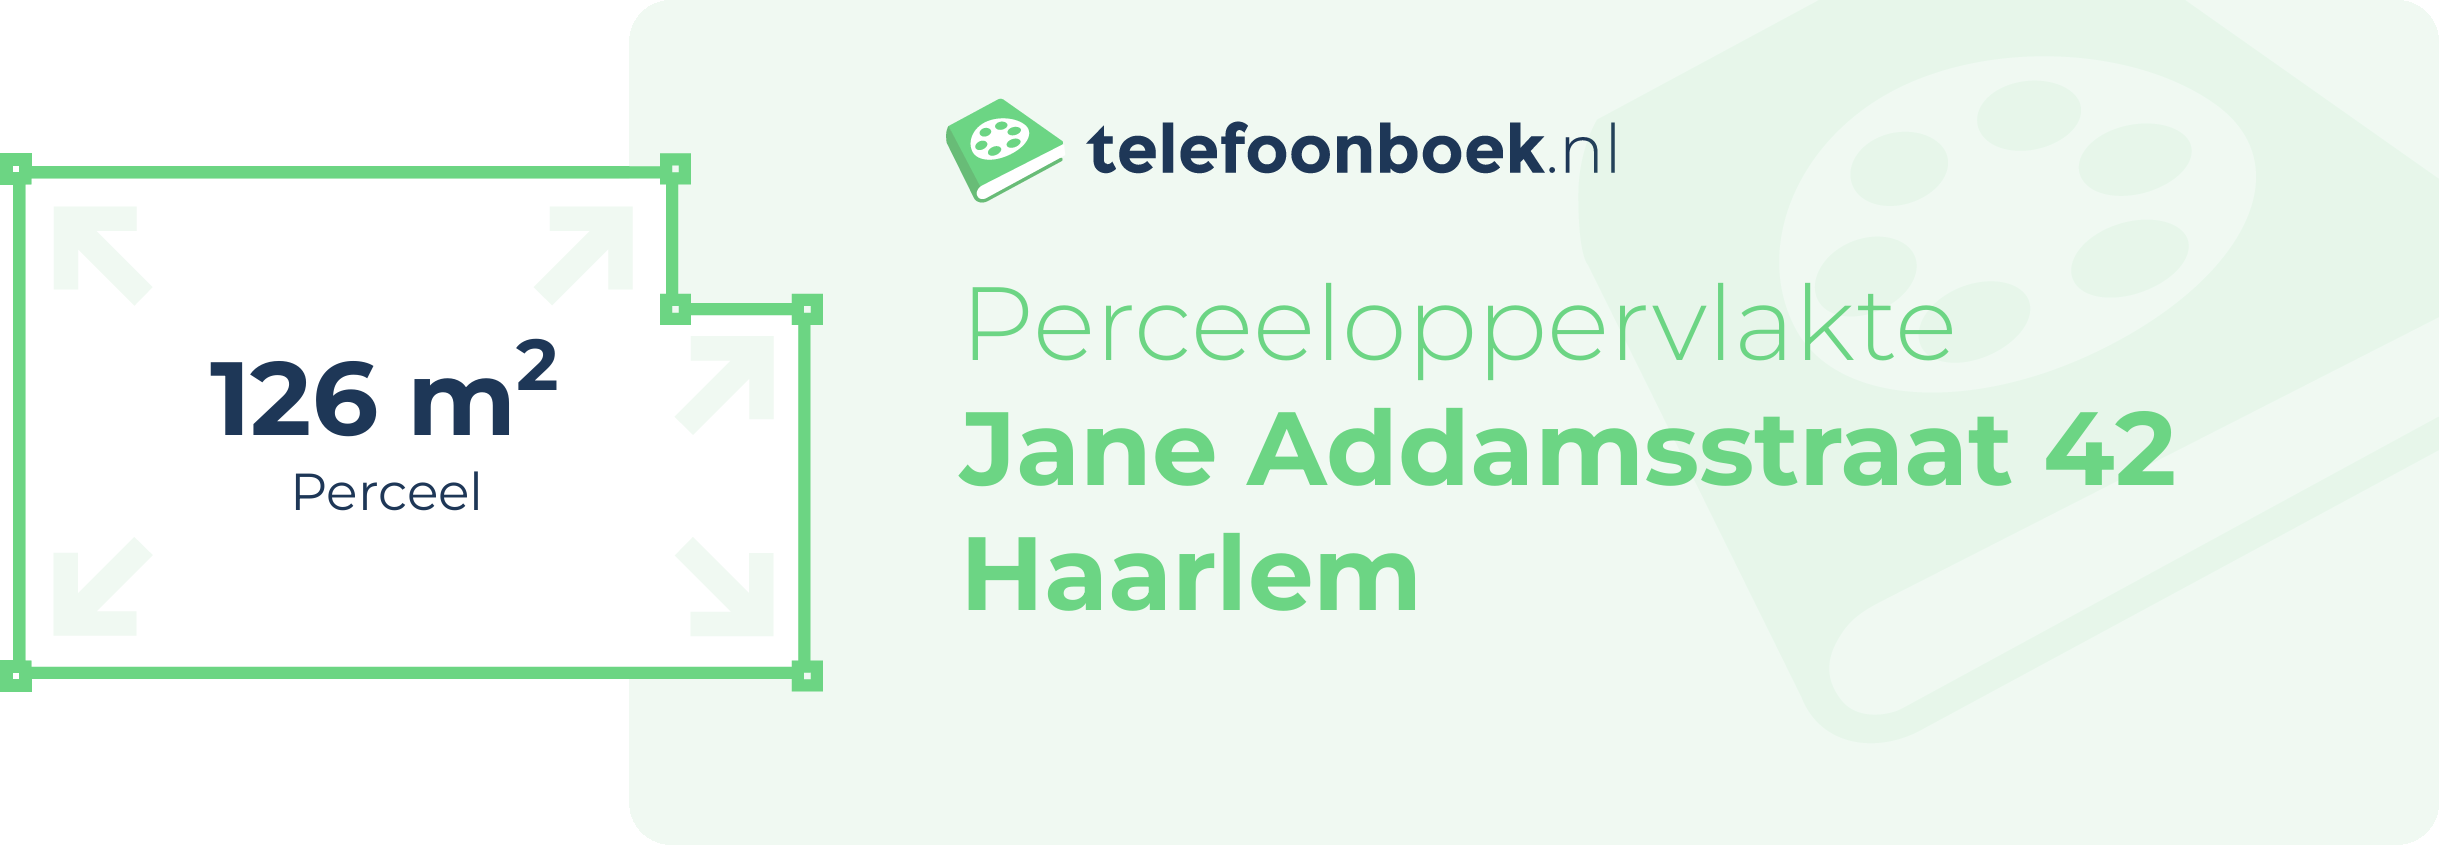 Perceeloppervlakte Jane Addamsstraat 42 Haarlem